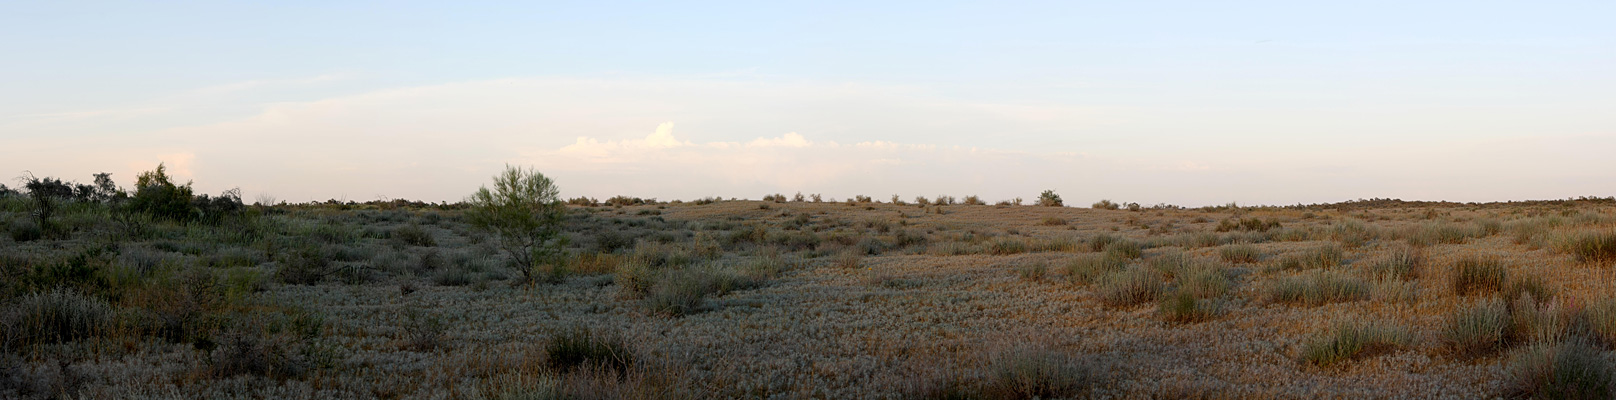 Кызылкум Восточный 2, image of landscape/habitat.